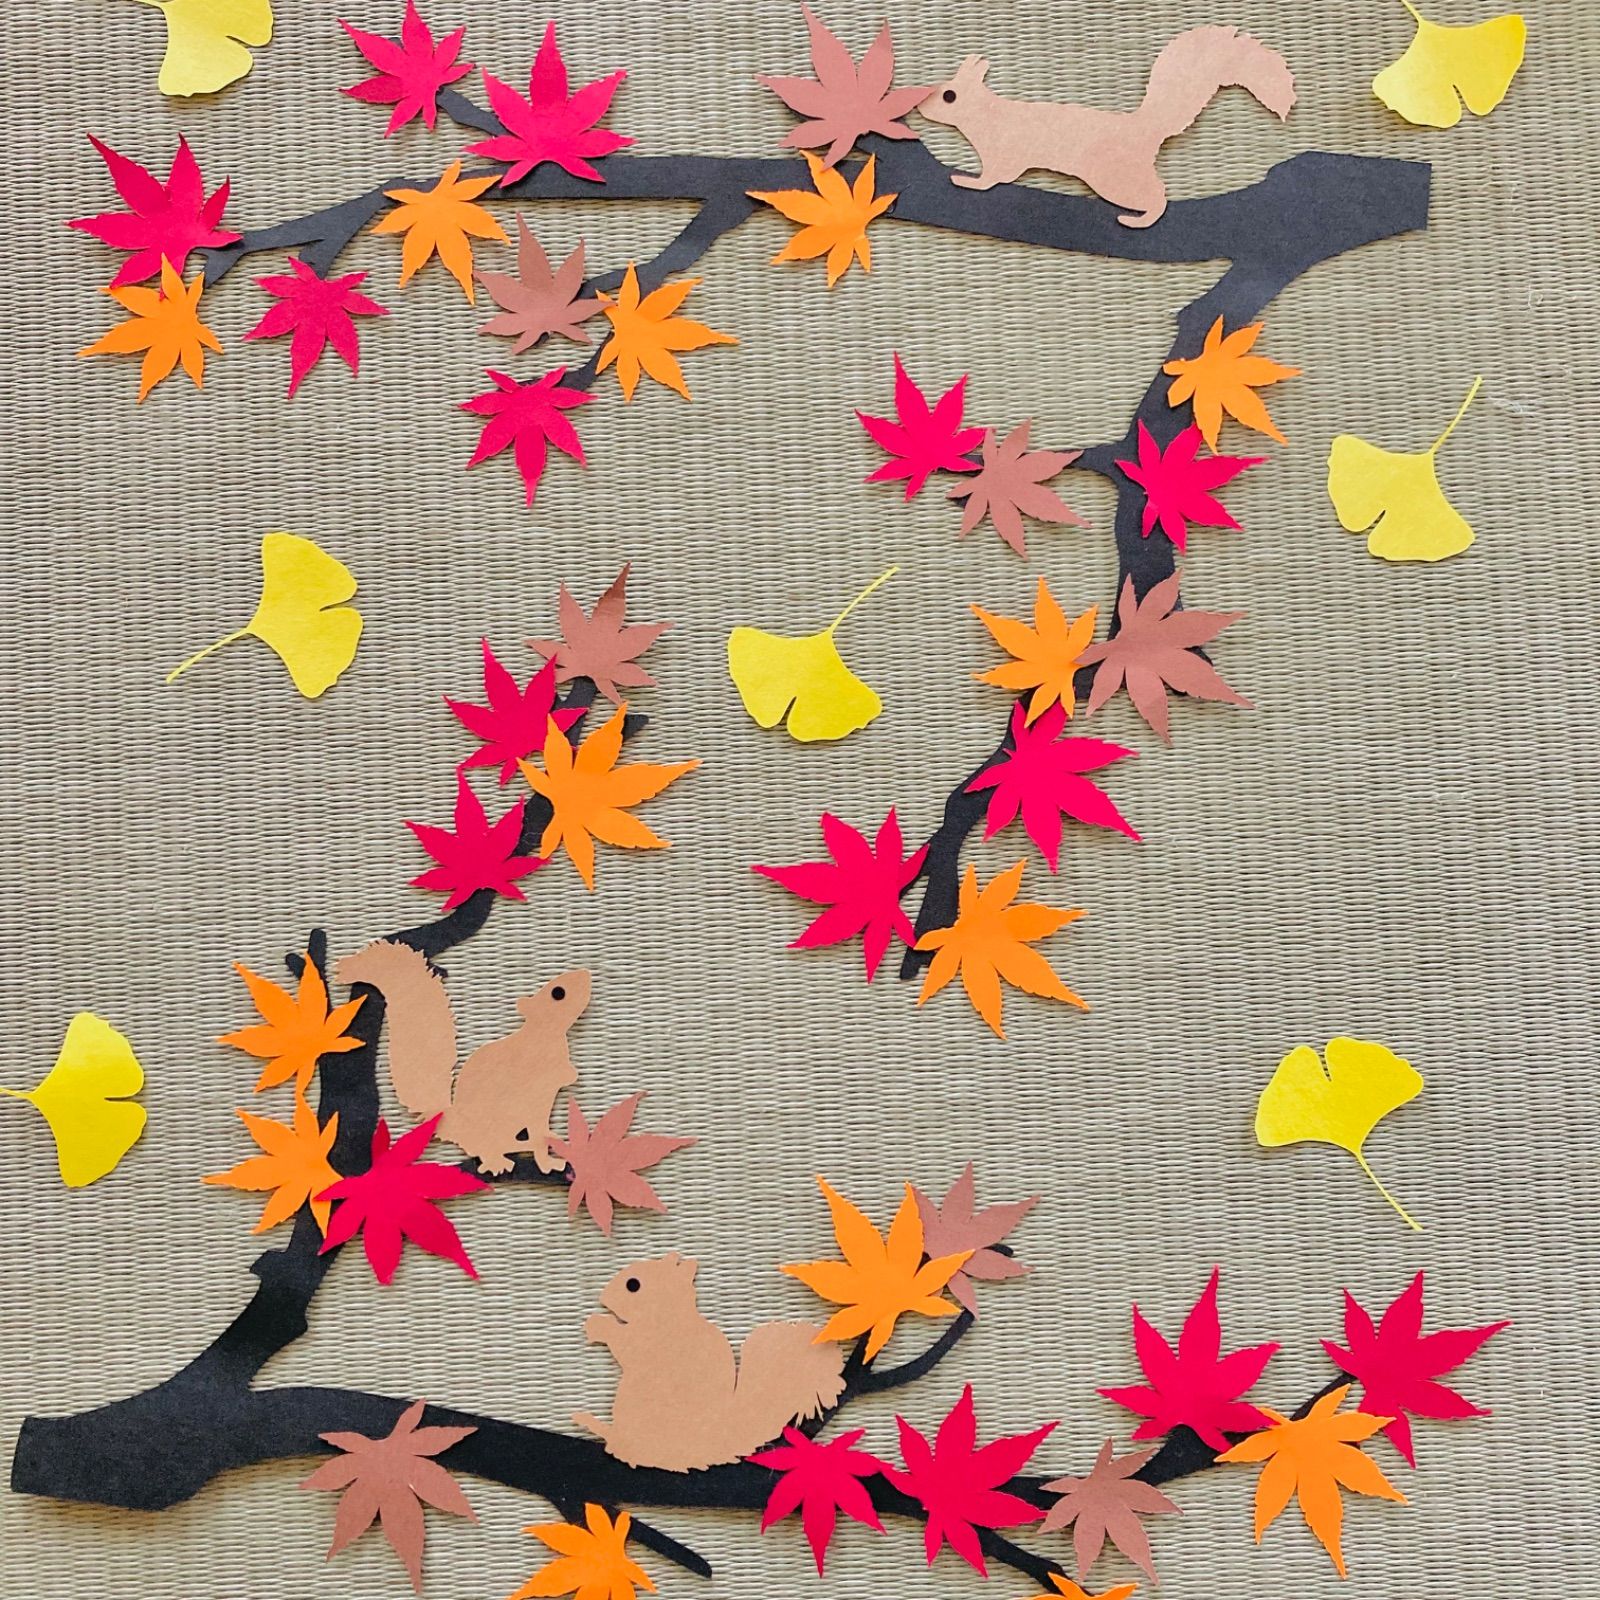 壁面飾り 9月 10月 11月 装飾 秋 ハンドメイド 保育室 壁面 手作り 落ち葉 リス 紅葉 イチョウ のあ メルカリ